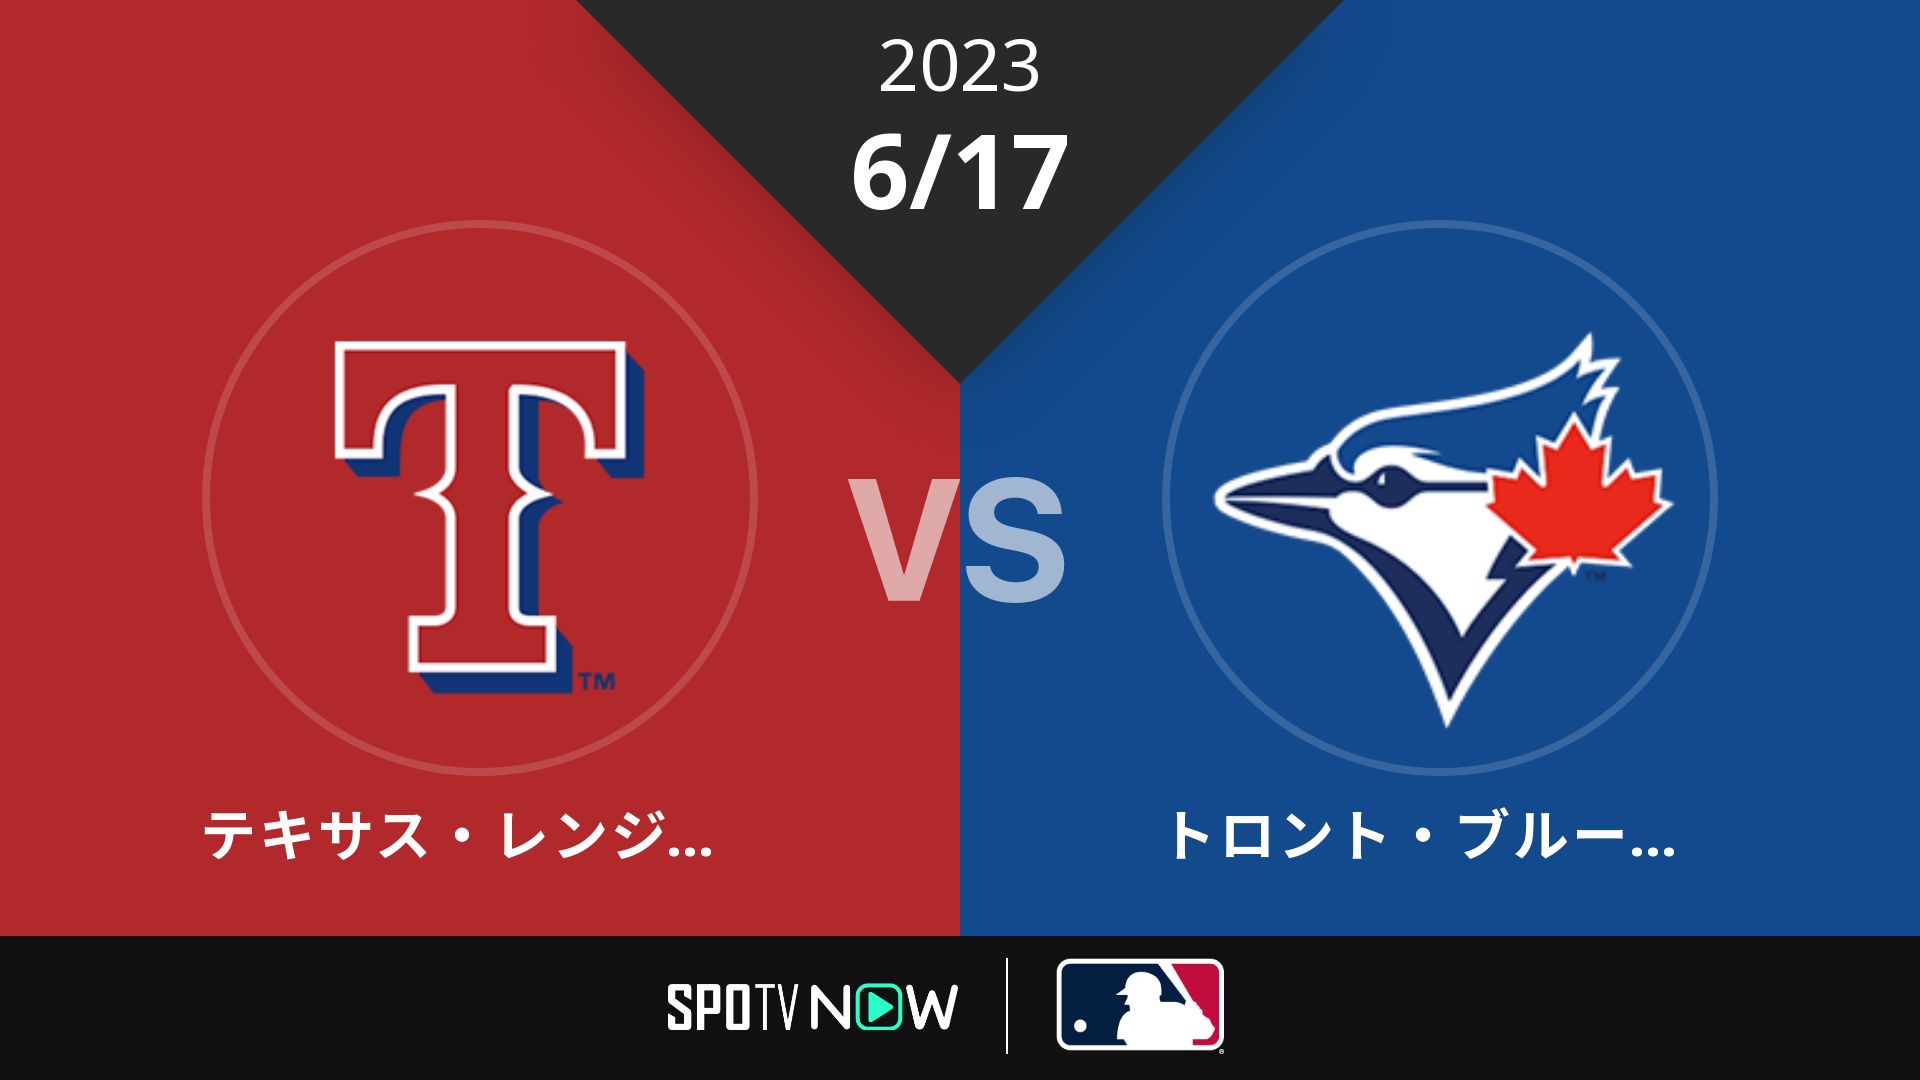 2023/6/17 レンジャーズ vs ブルージェイズ [MLB]